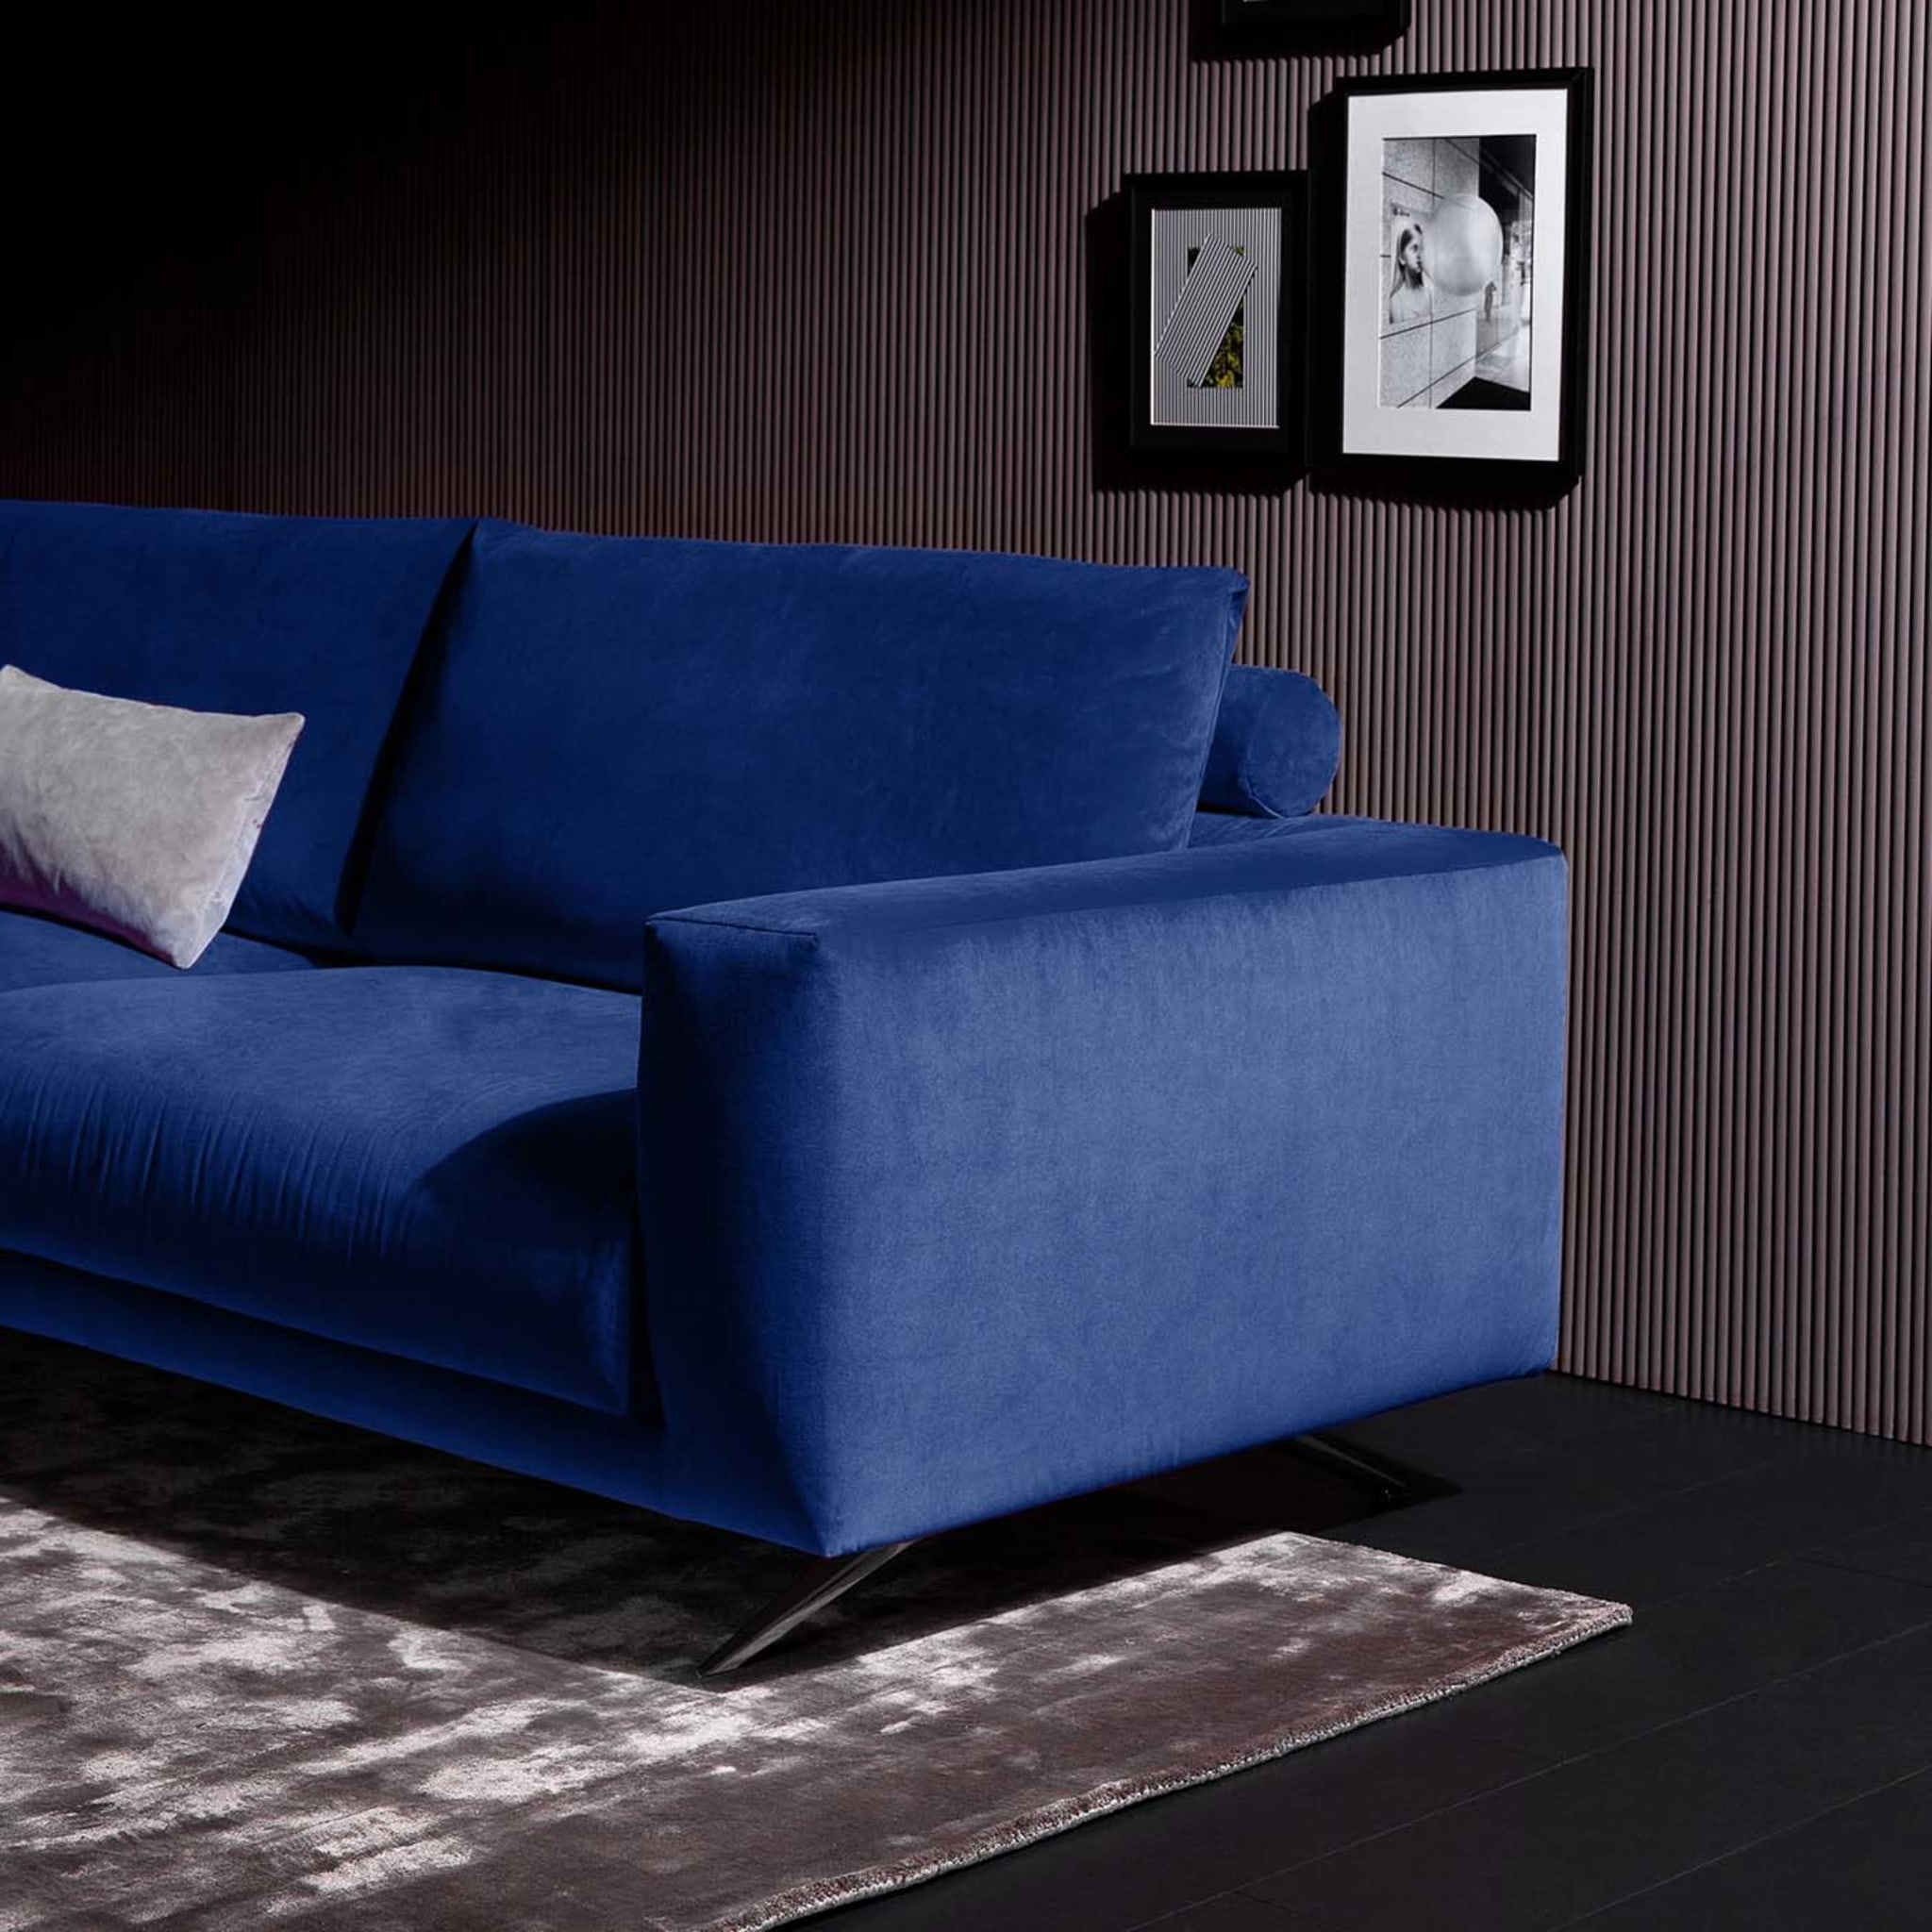 Re set 580 Blaues sofa mit rechteckigen kissen by G. Landoni - Alternative Ansicht 2